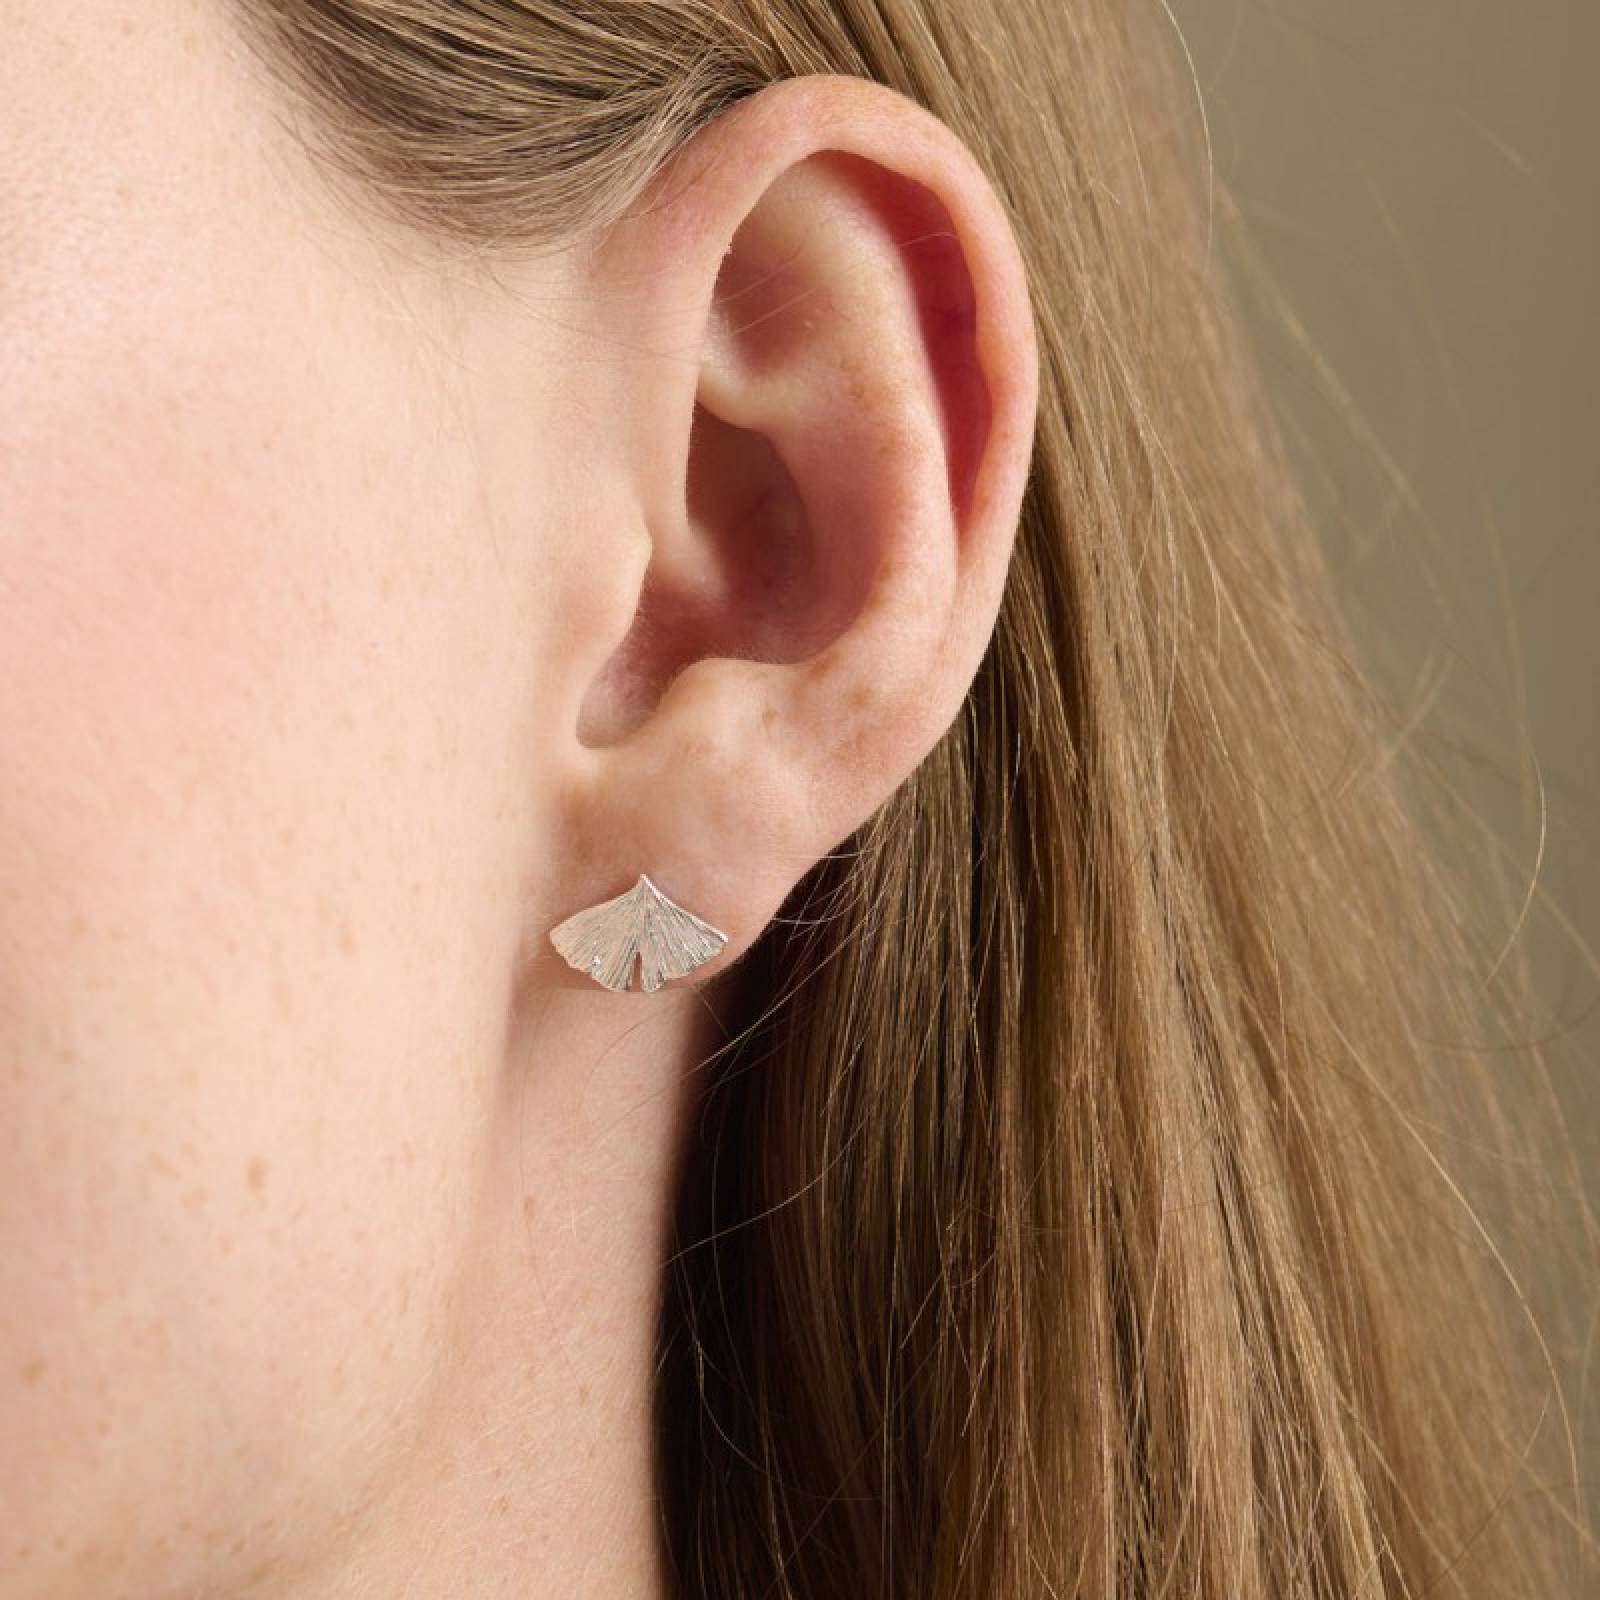 Biloba Stud Earrings In Silver By Pernille Corydon thumbnails